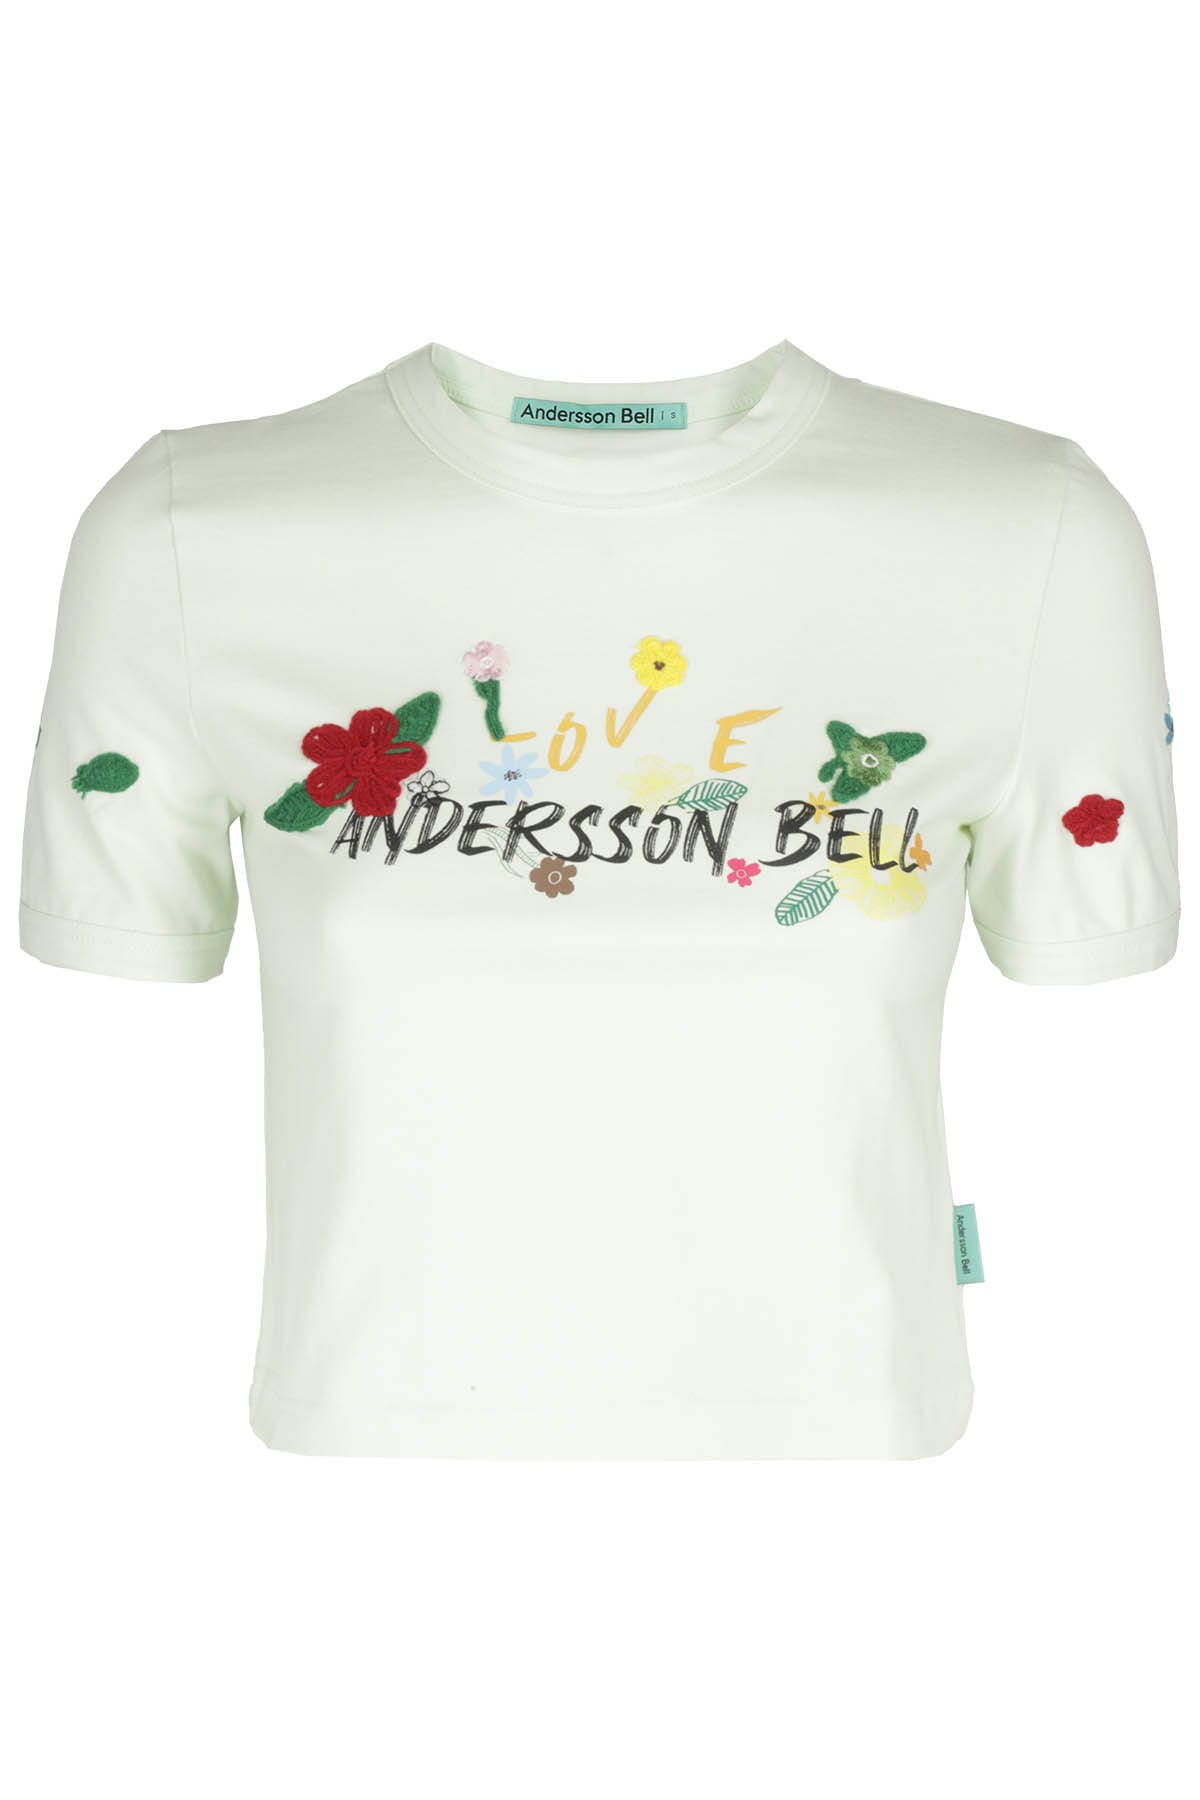 Andersson Bell Dasha Flower Garden Logo